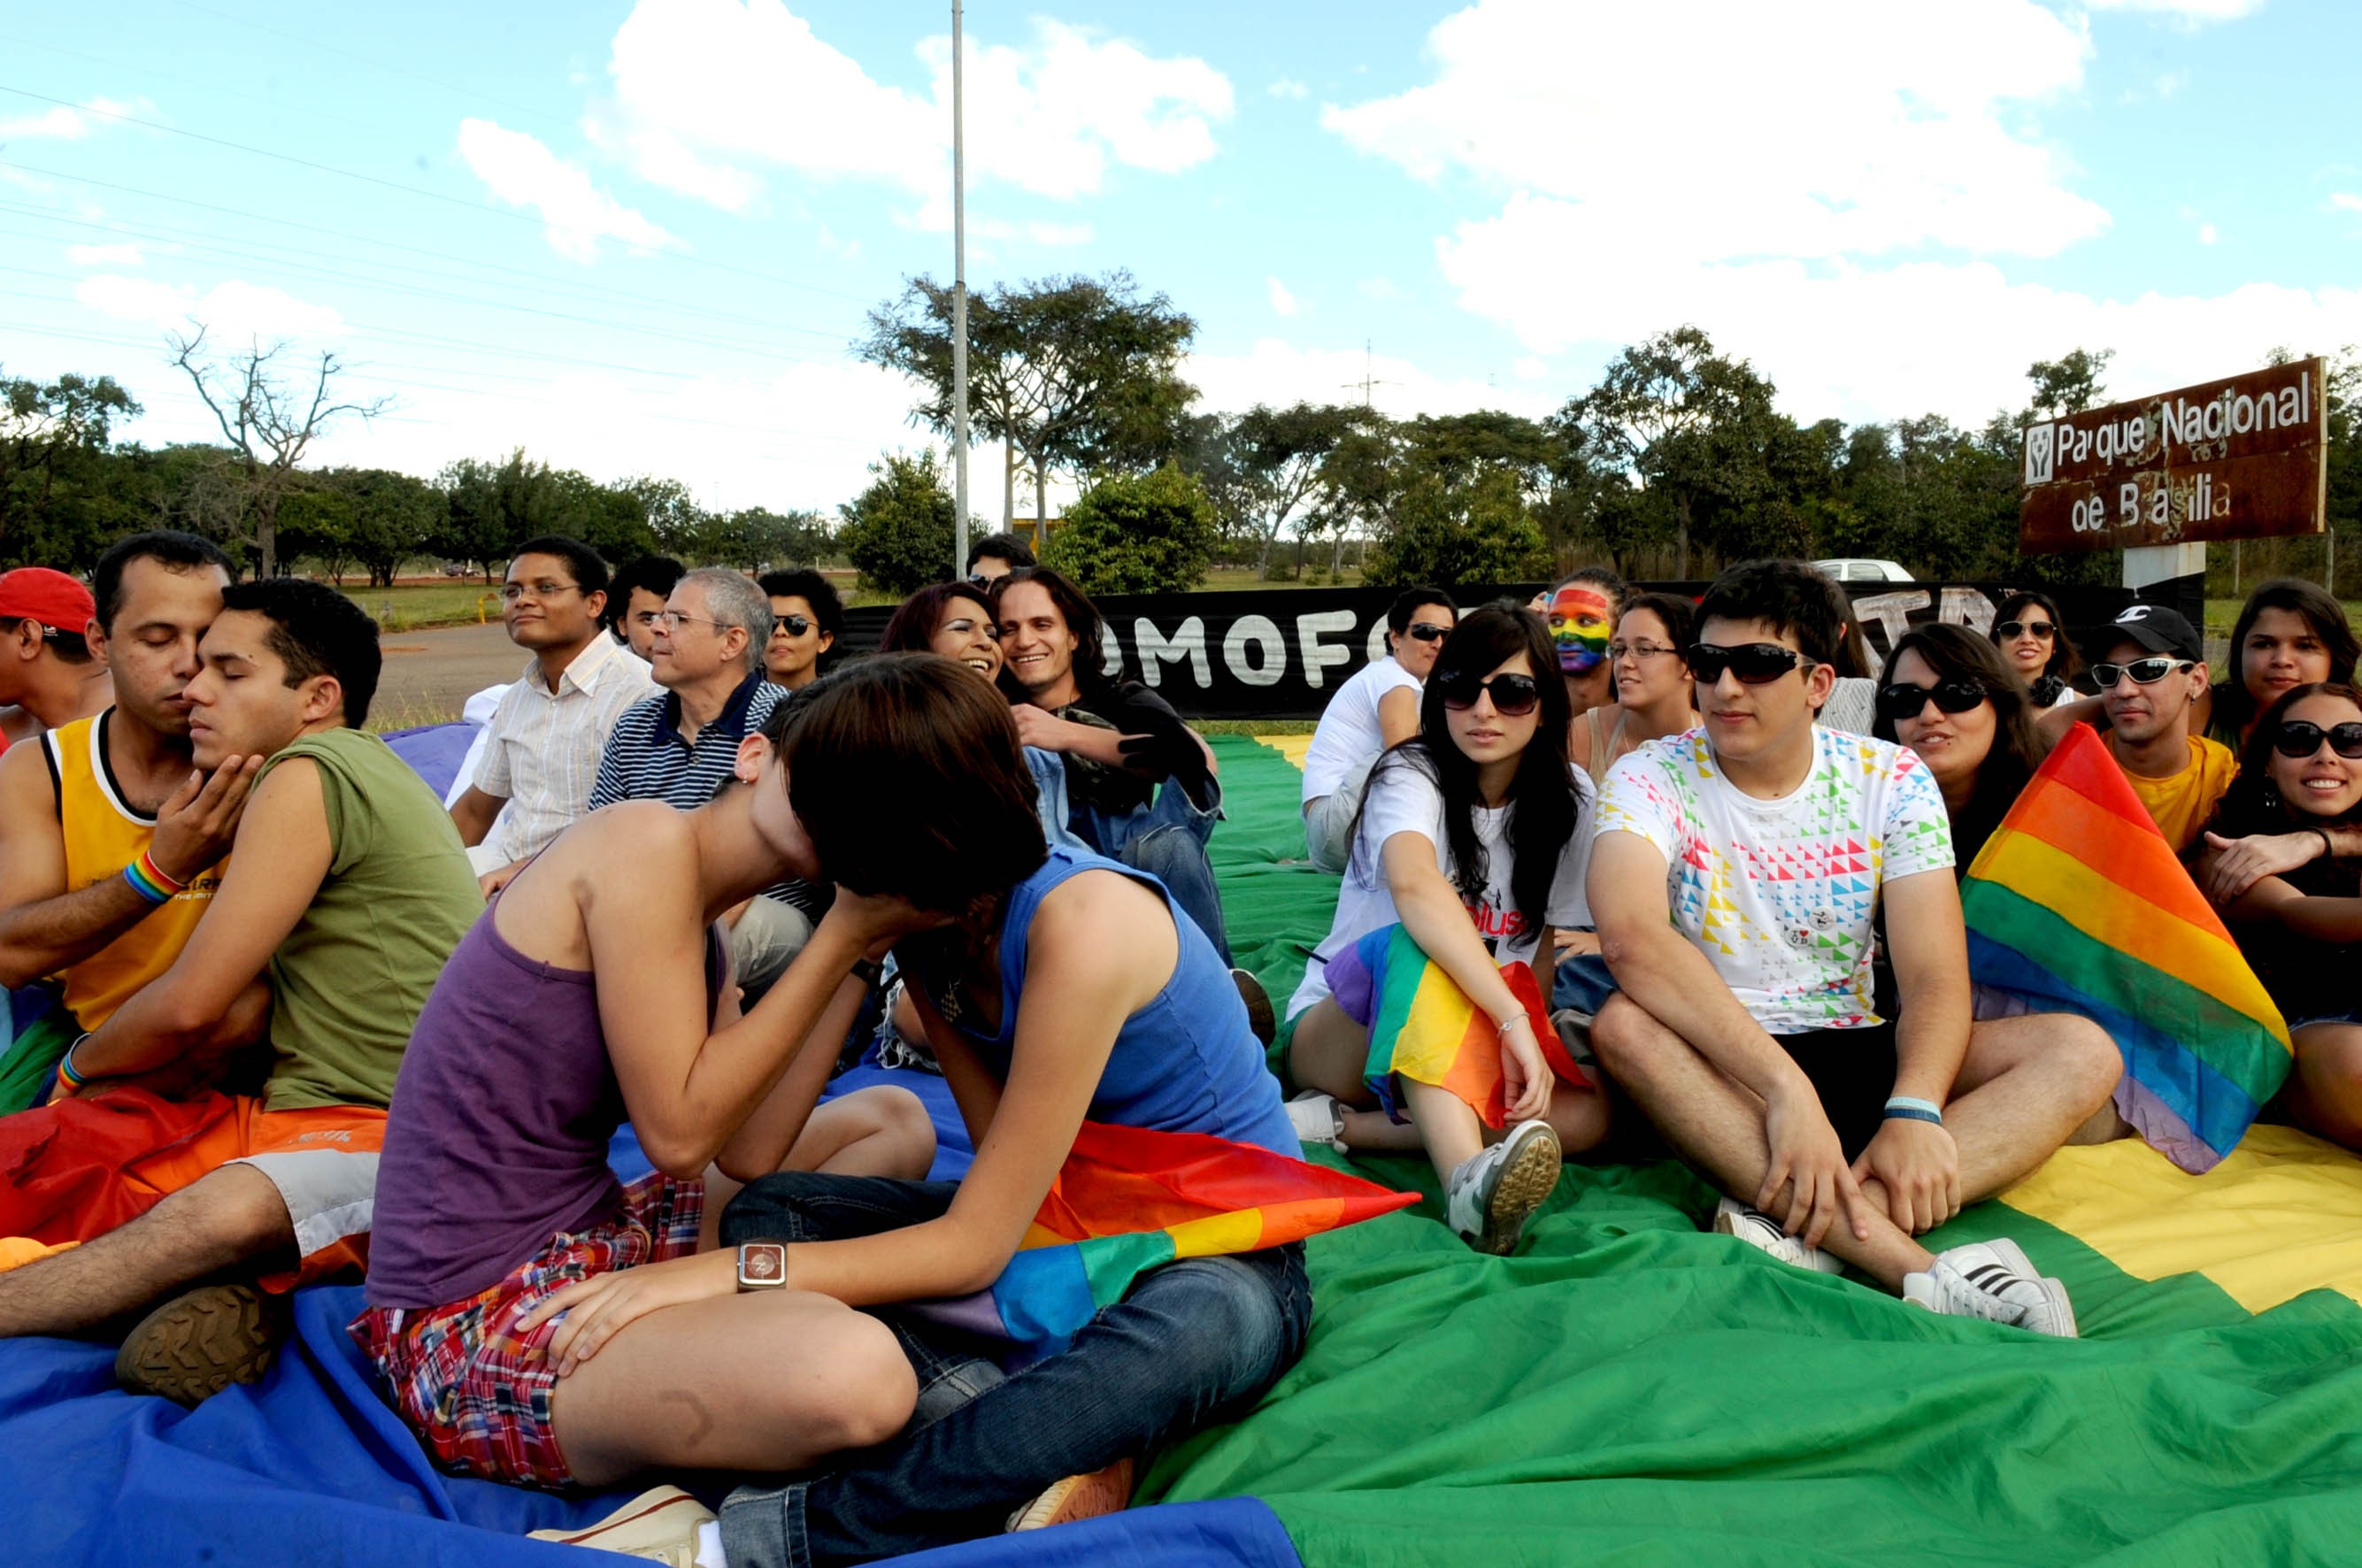  México, segundo país más homofóbico del planeta: UNAM